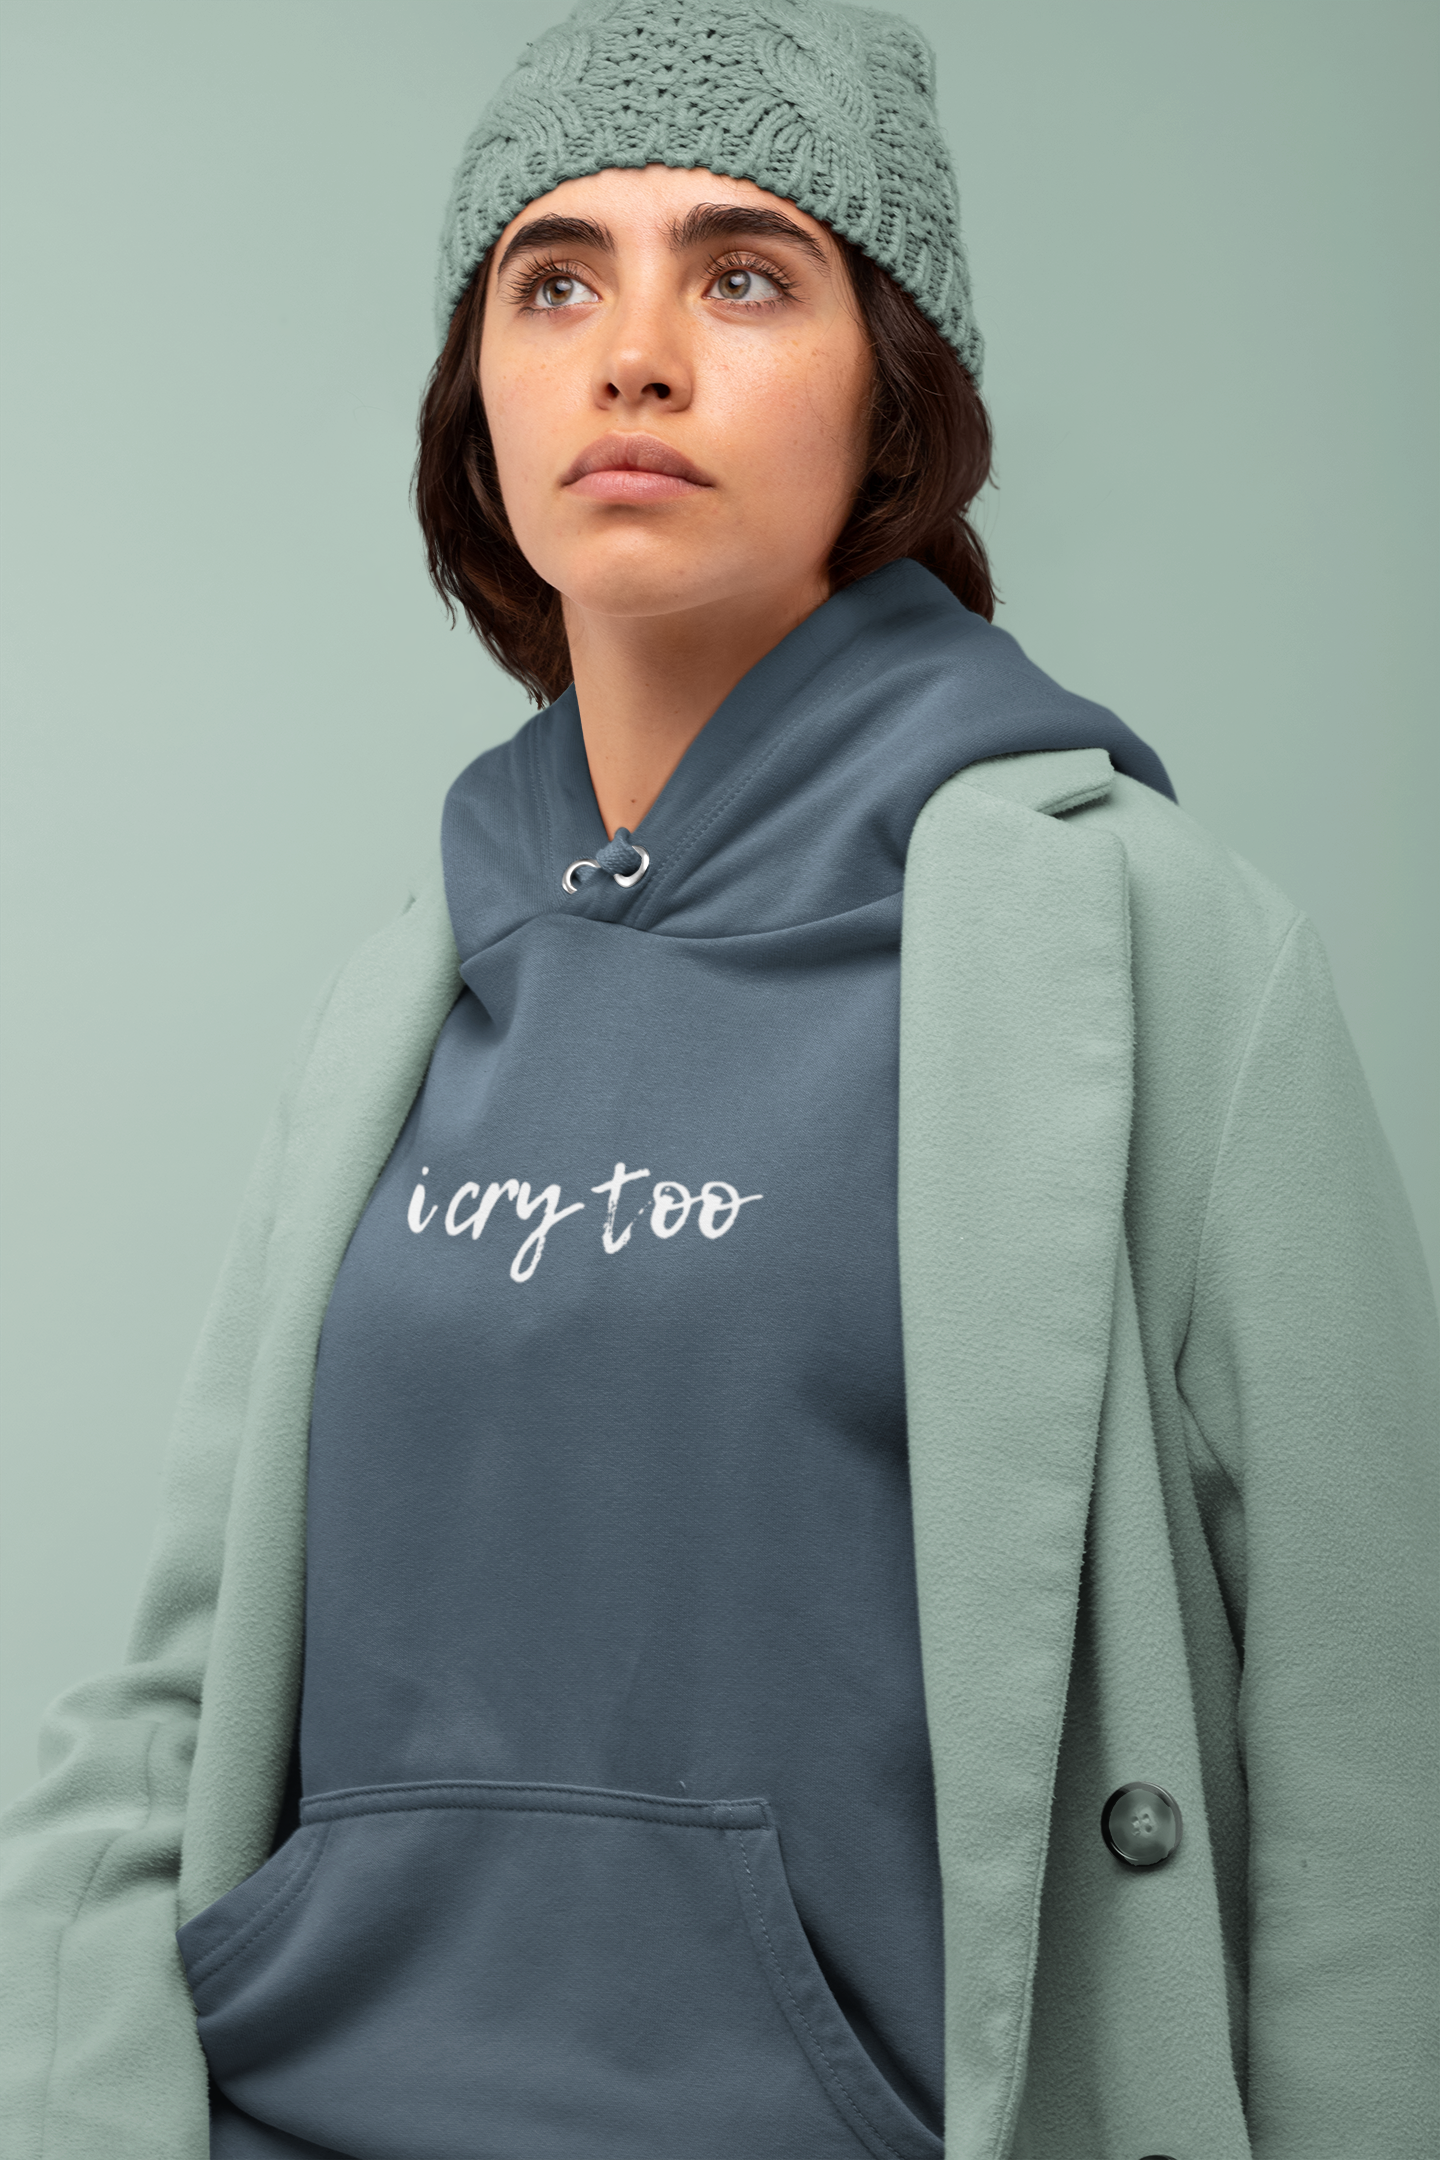 Sírni ér | Inspirációs női póló és pulcsi